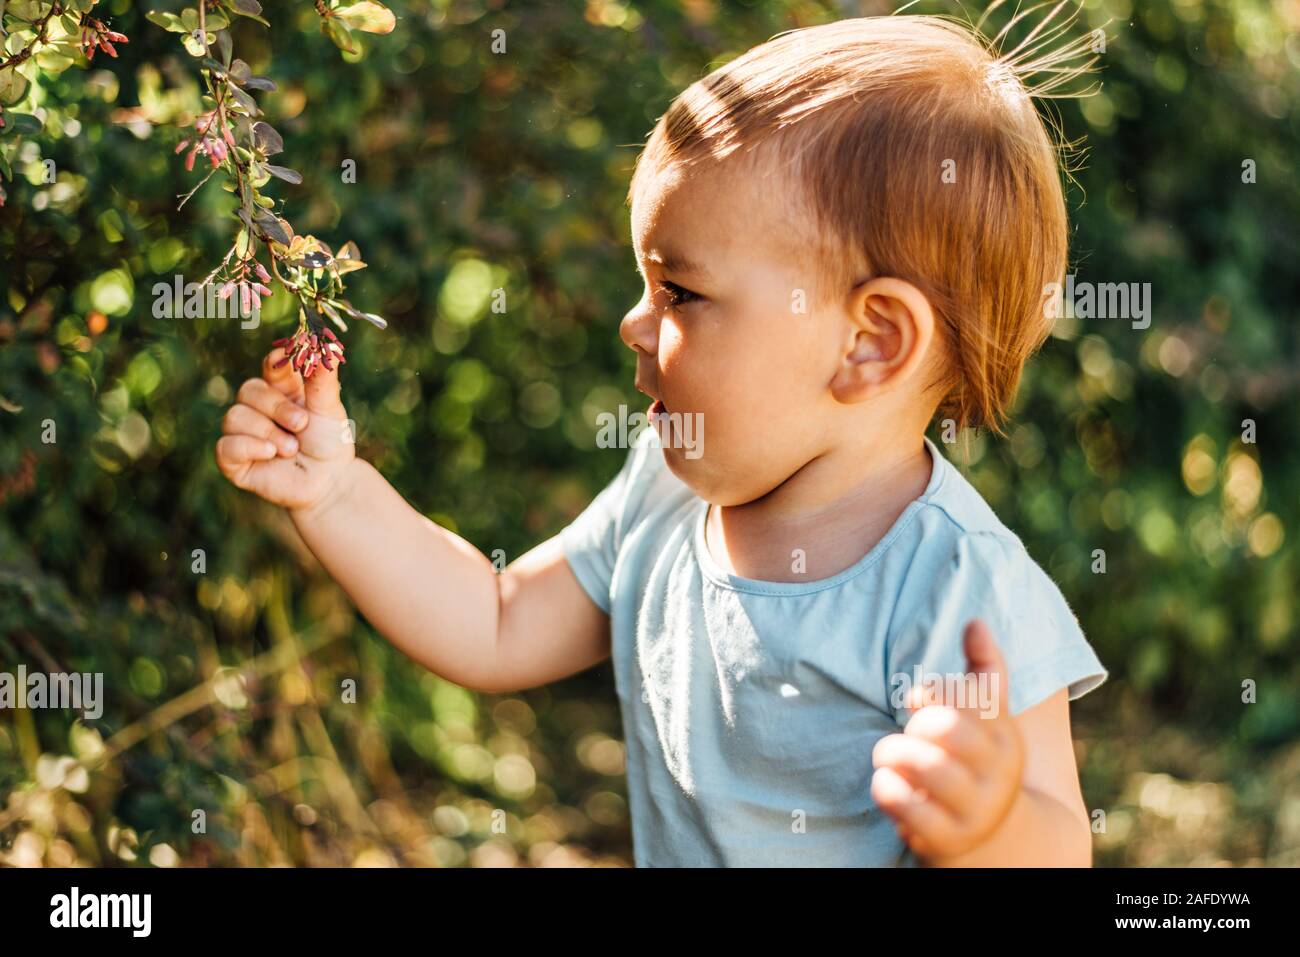 Baby boy tocca foglie verdi. Stile di vita homeschooling, eco vita cosciente, vicino alla natura dello sviluppo. Giornata di sole Foto Stock